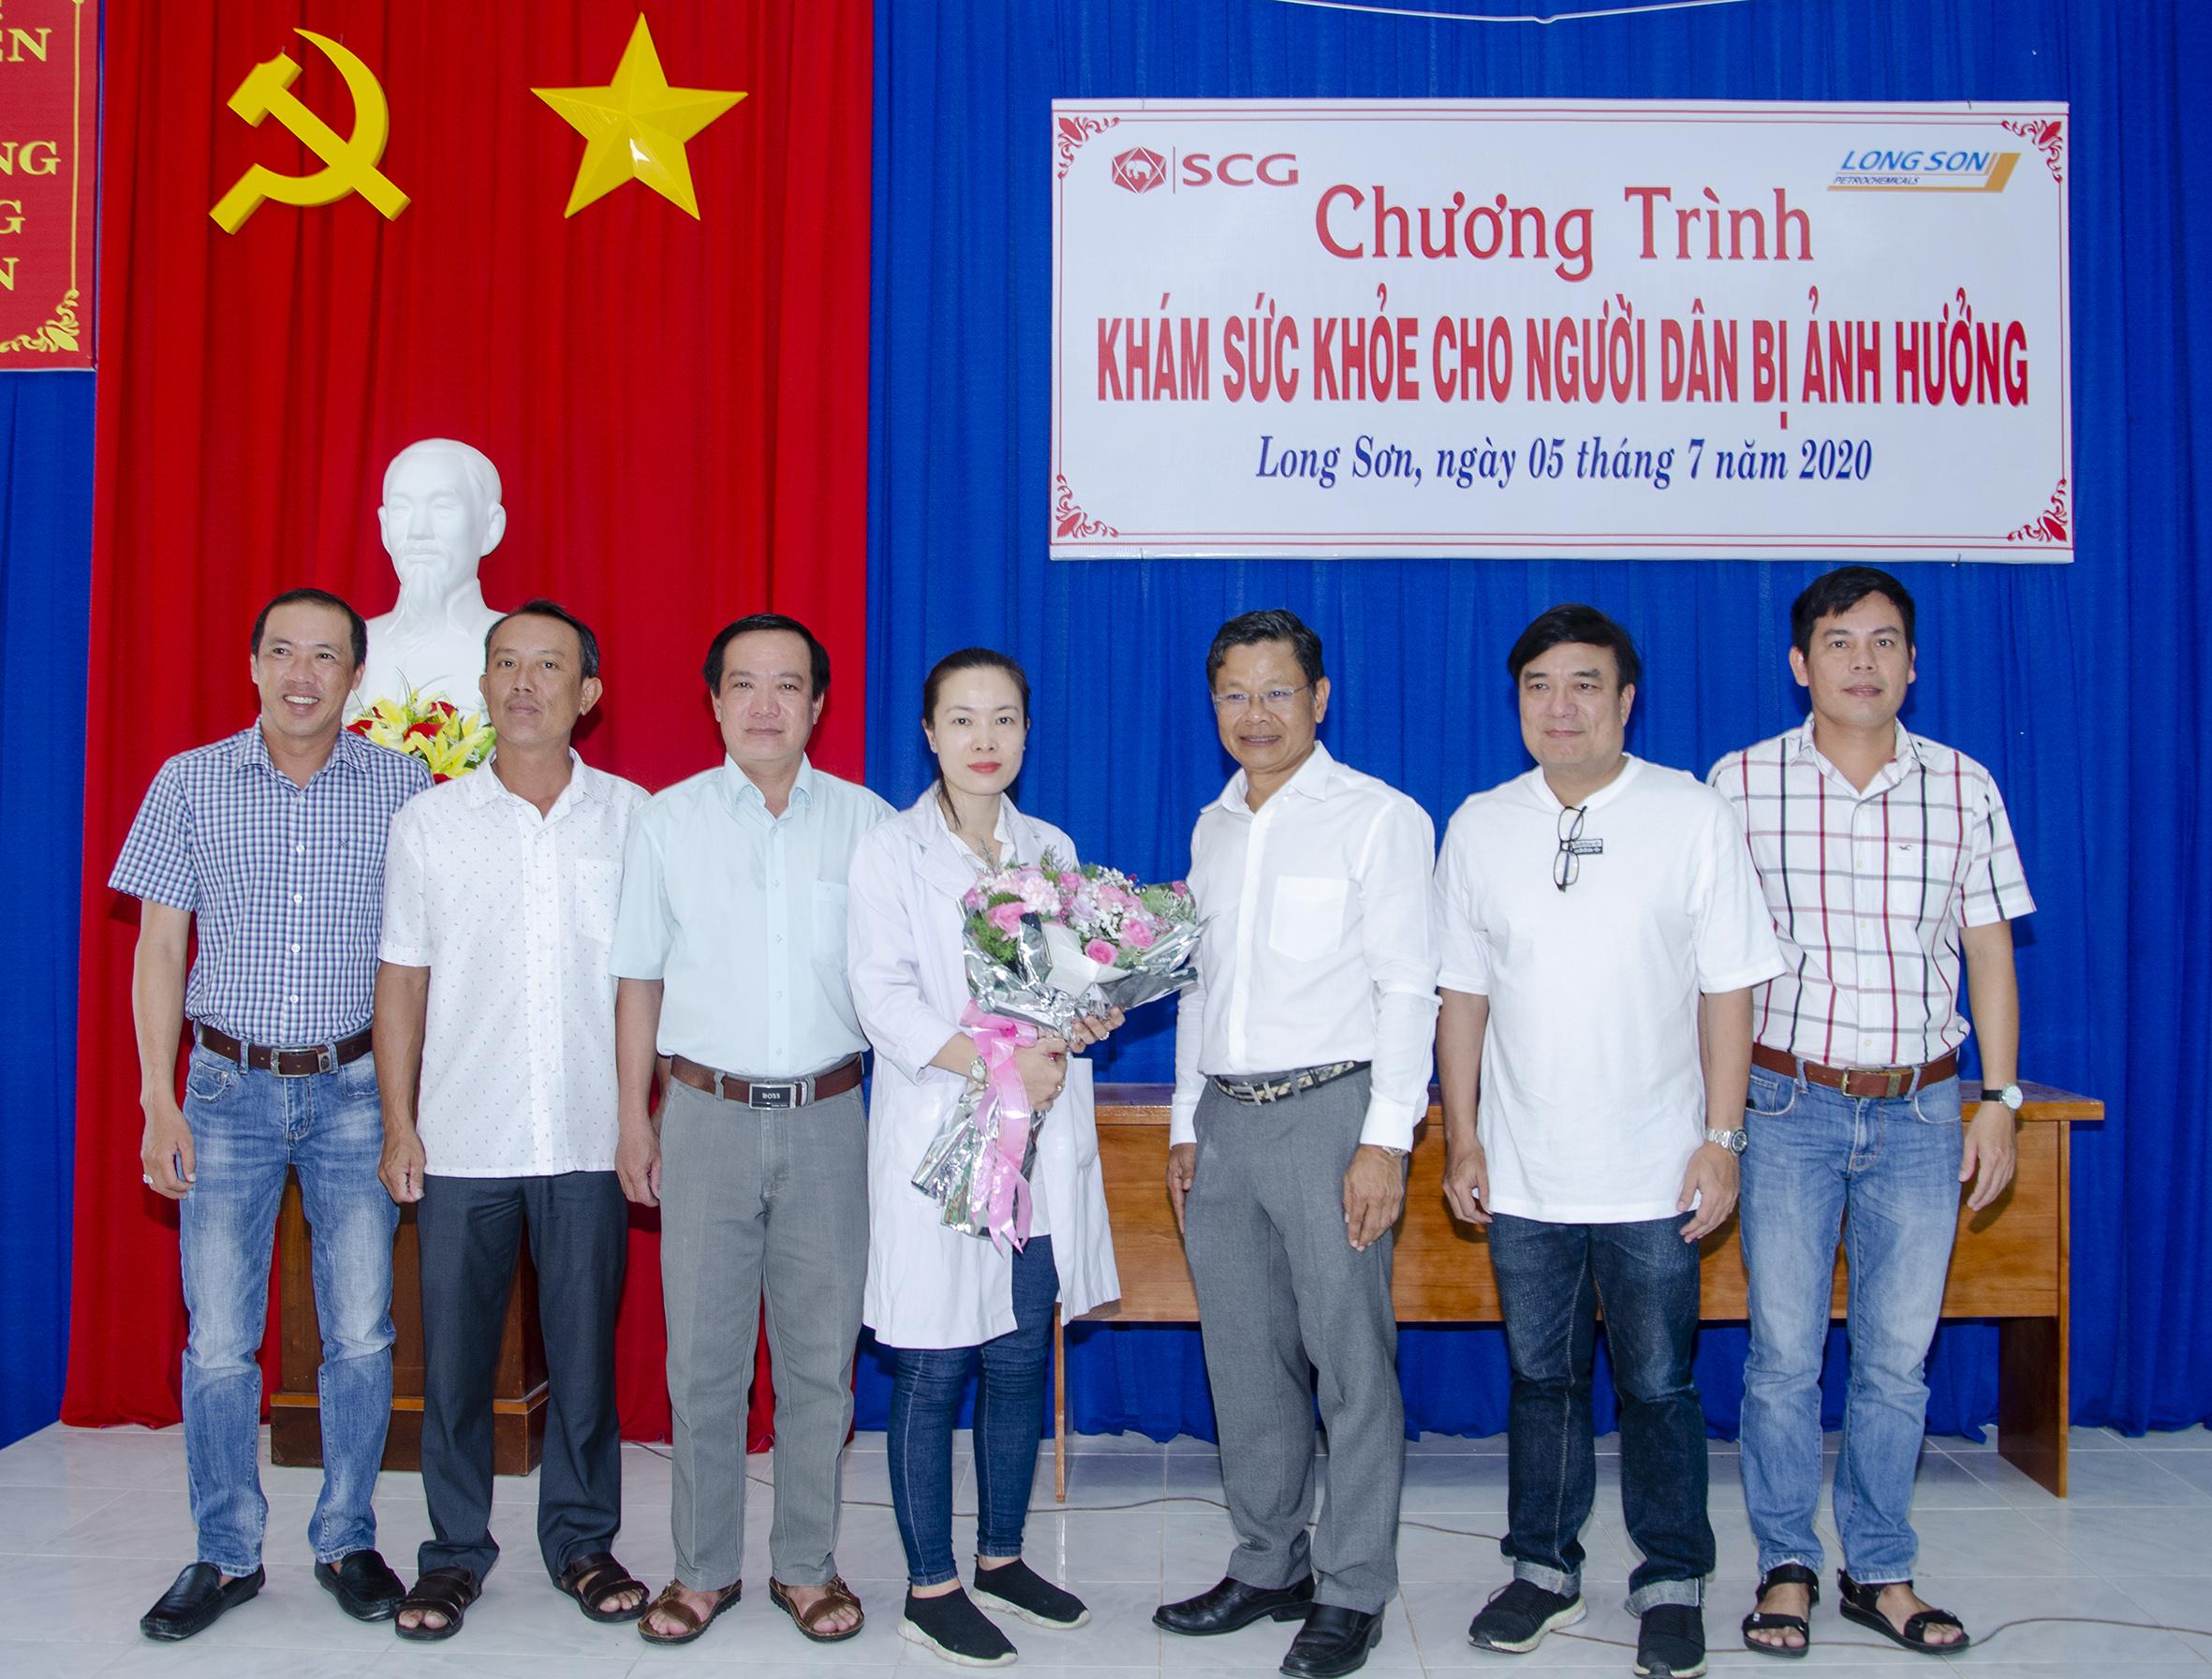 Ông Soros Khlongchoengsan, Giám đốc Nhân sự Công ty TNHH Hóa dầu Long Sơn (thứ 3 từ phải qua) tặng hoa cảm ơn Phòng khám Đa khoa quốc tế Thế giới mới và UBND xã Long Sơn.